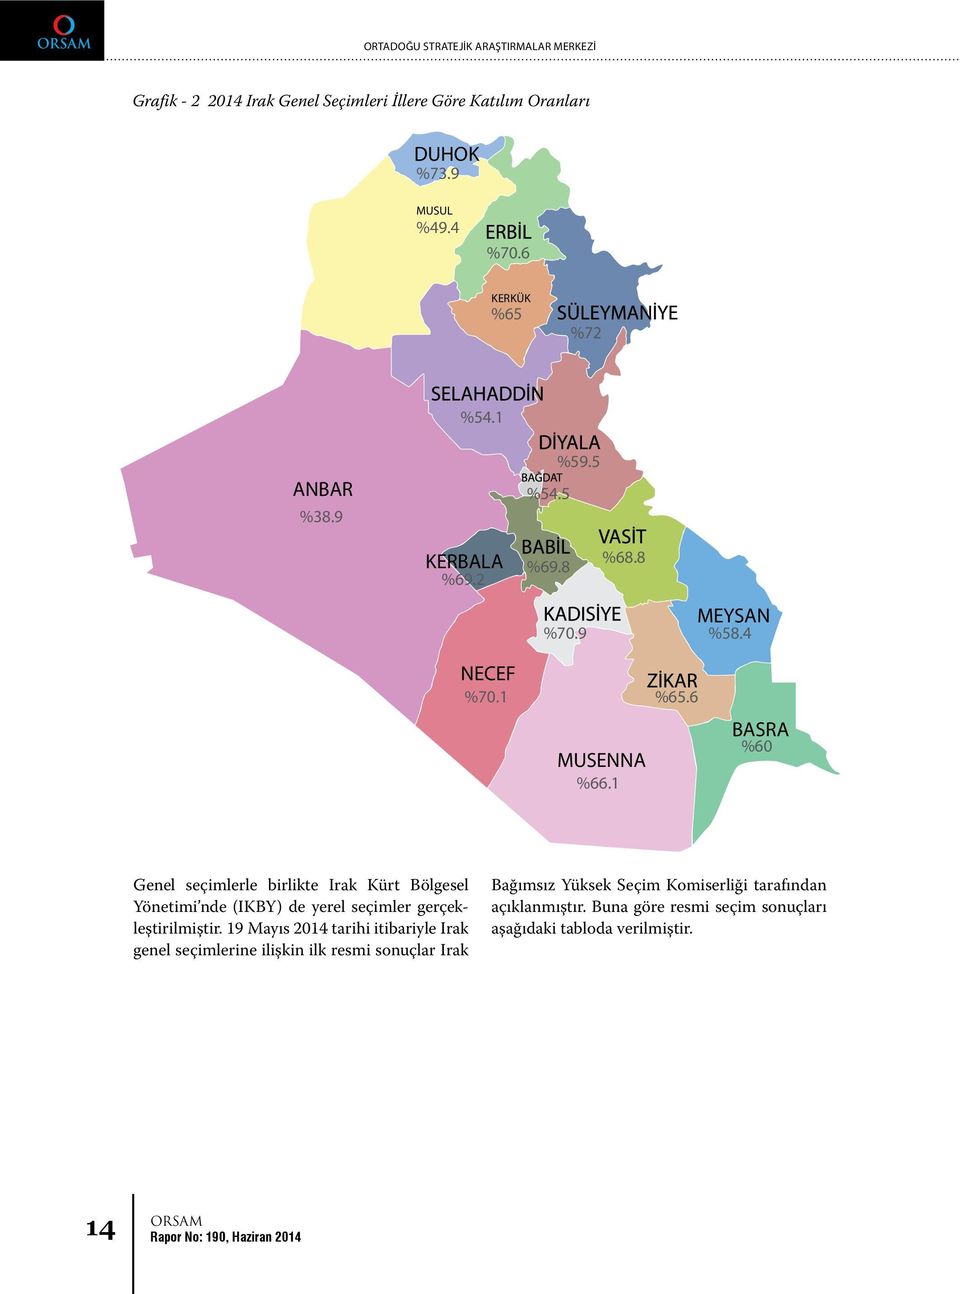 6 BASRA %60 Genel seçimlerle birlikte Irak Kürt Bölgesel Yönetimi nde (IKBY) de yerel seçimler gerçekleştirilmiştir.